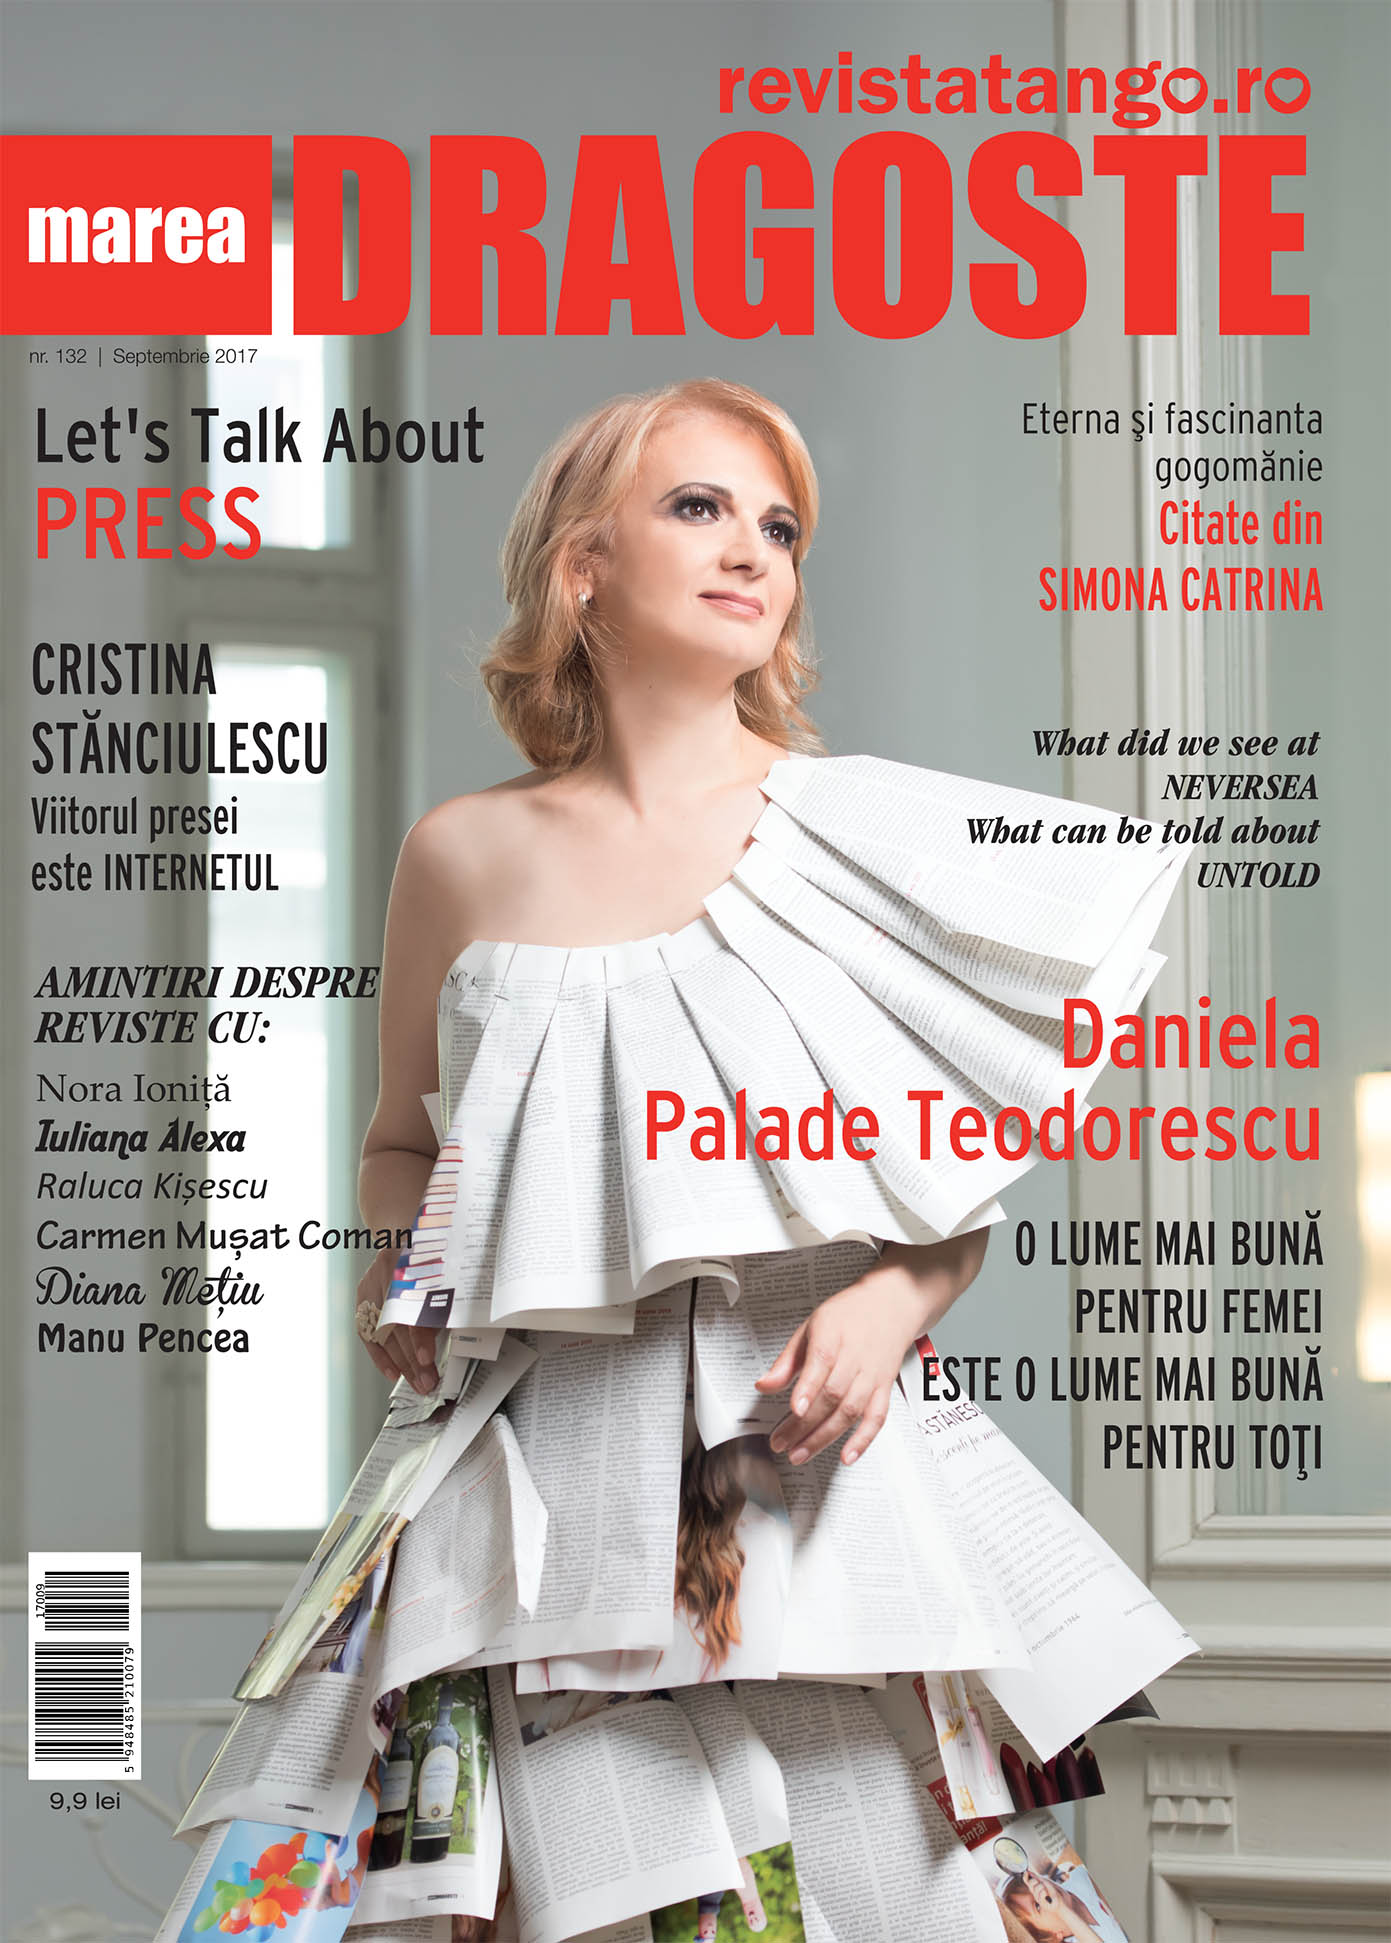 Daniela Palade Teodorescu pe coperta Marea Dragoste-revistatango.ro, nr. 132, septembrie 2017